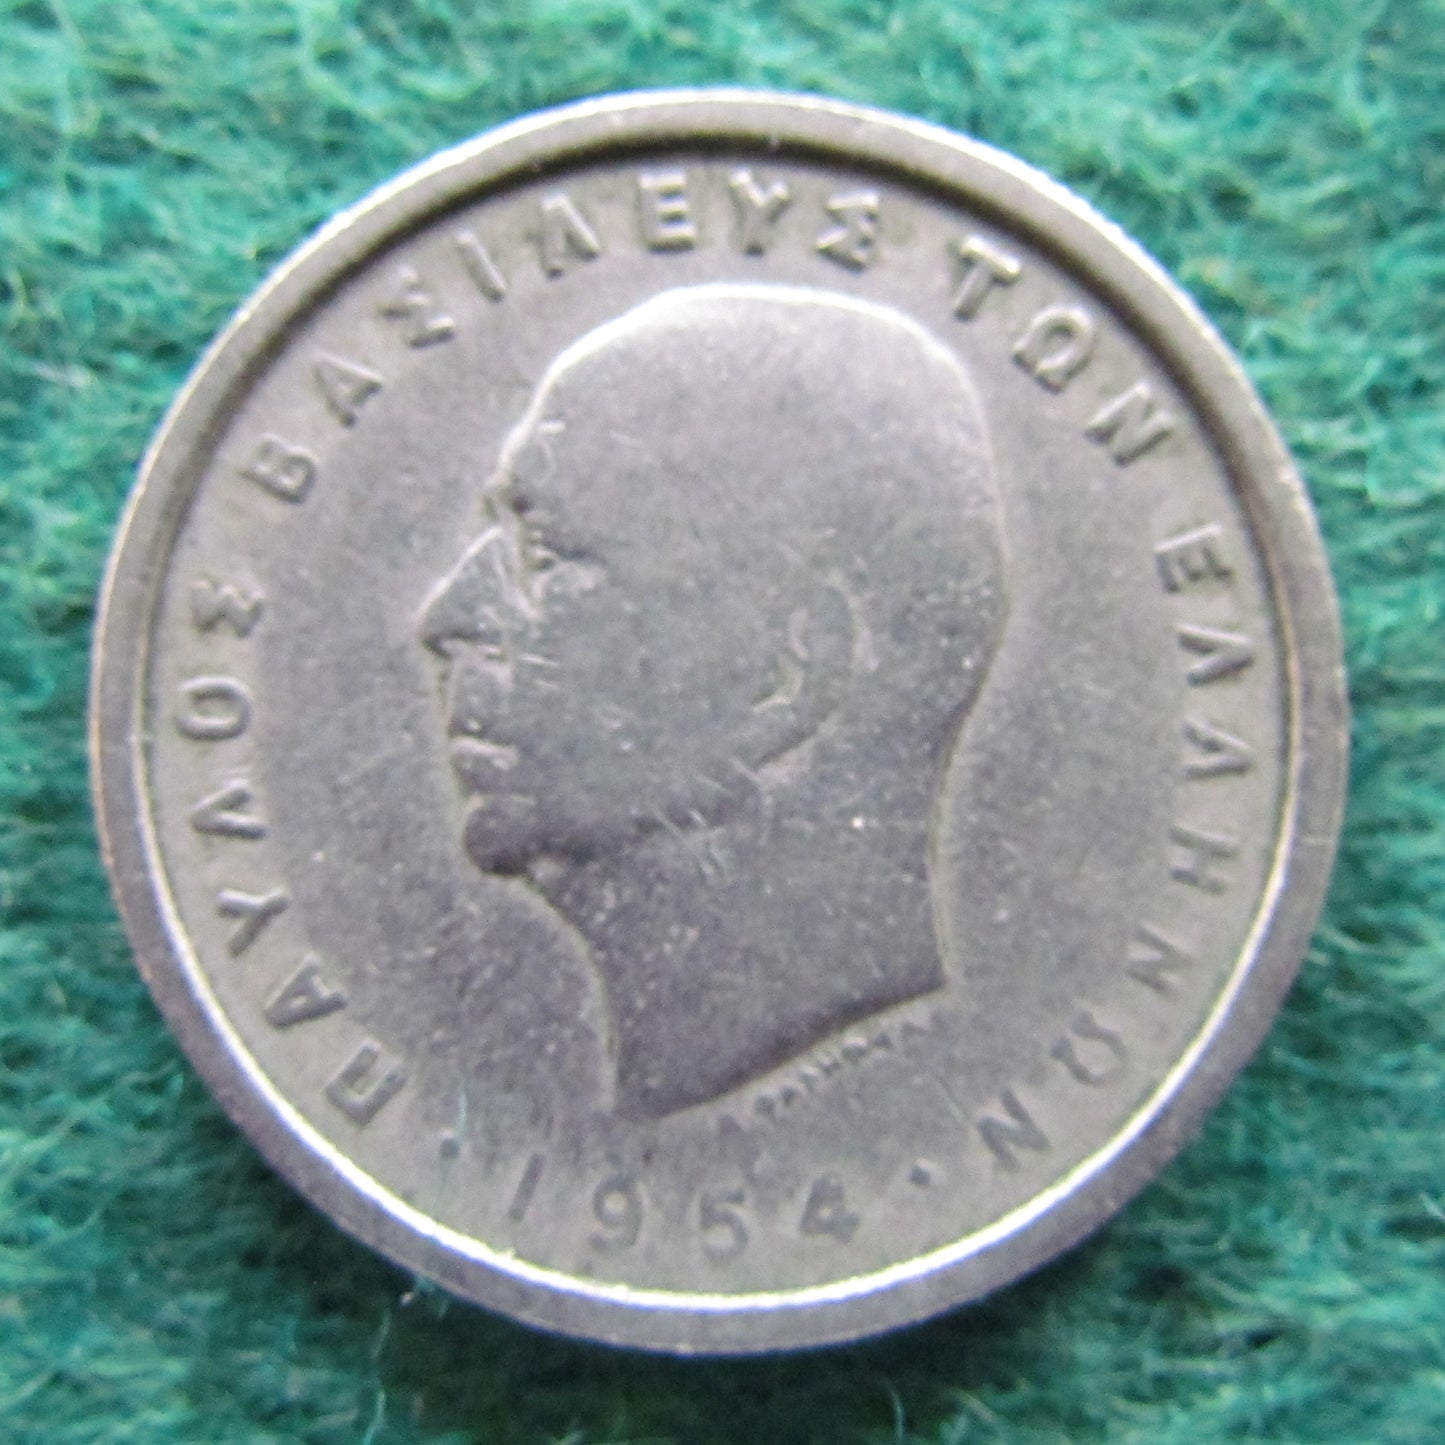 Greek 1954 2 Drachma Coin - Circulated